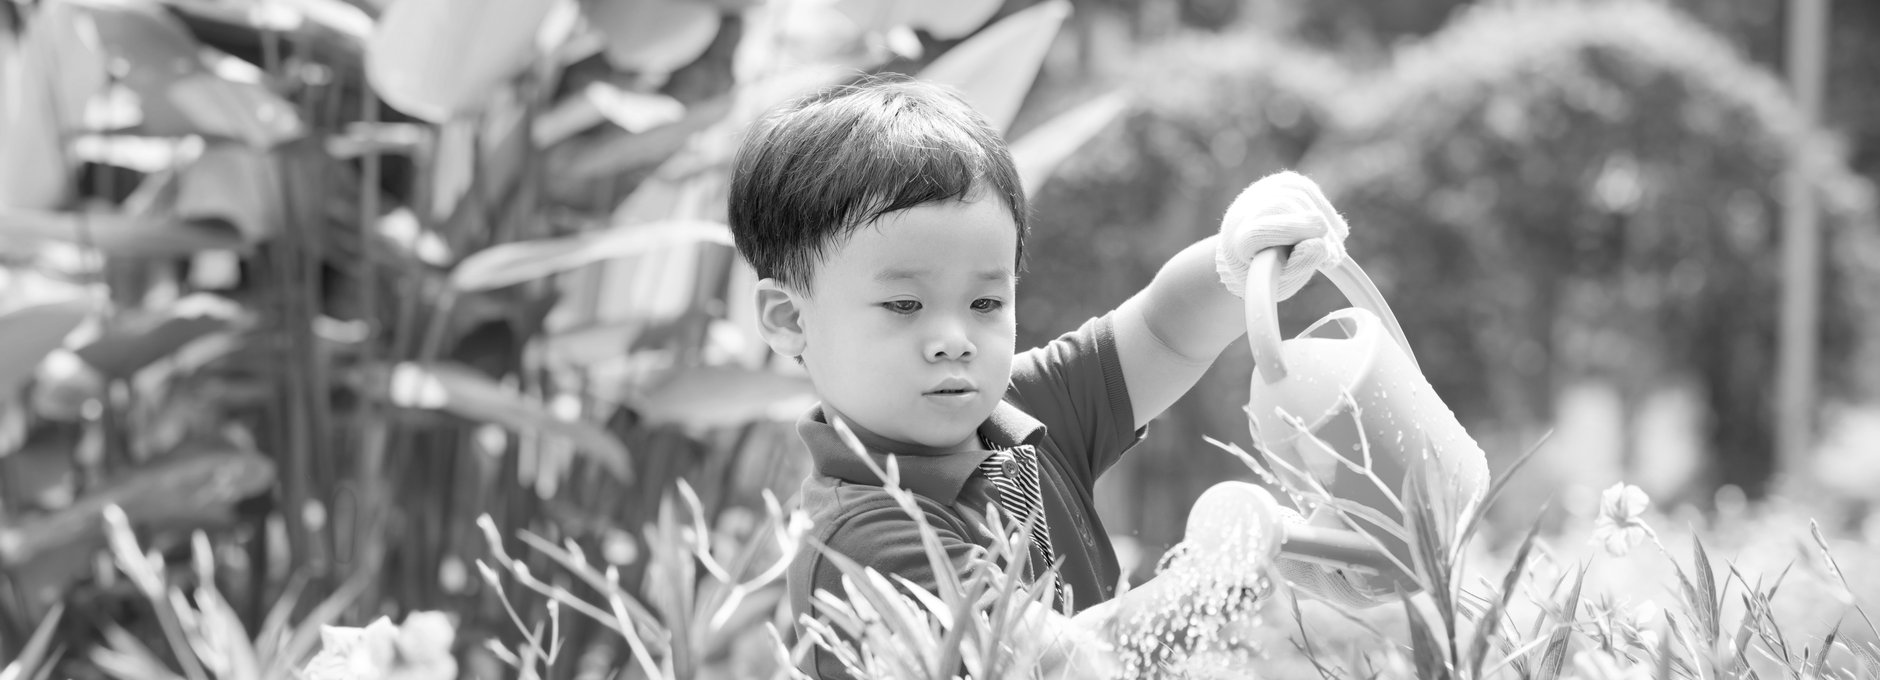 Kleiner Junge steht inmitten von Pflanzen und Blumen. Er wässert die Pflanzen mit einer Gießkanne. Im Hintergrund sind Pflanzen mit hohen Blättern zu erkennen.